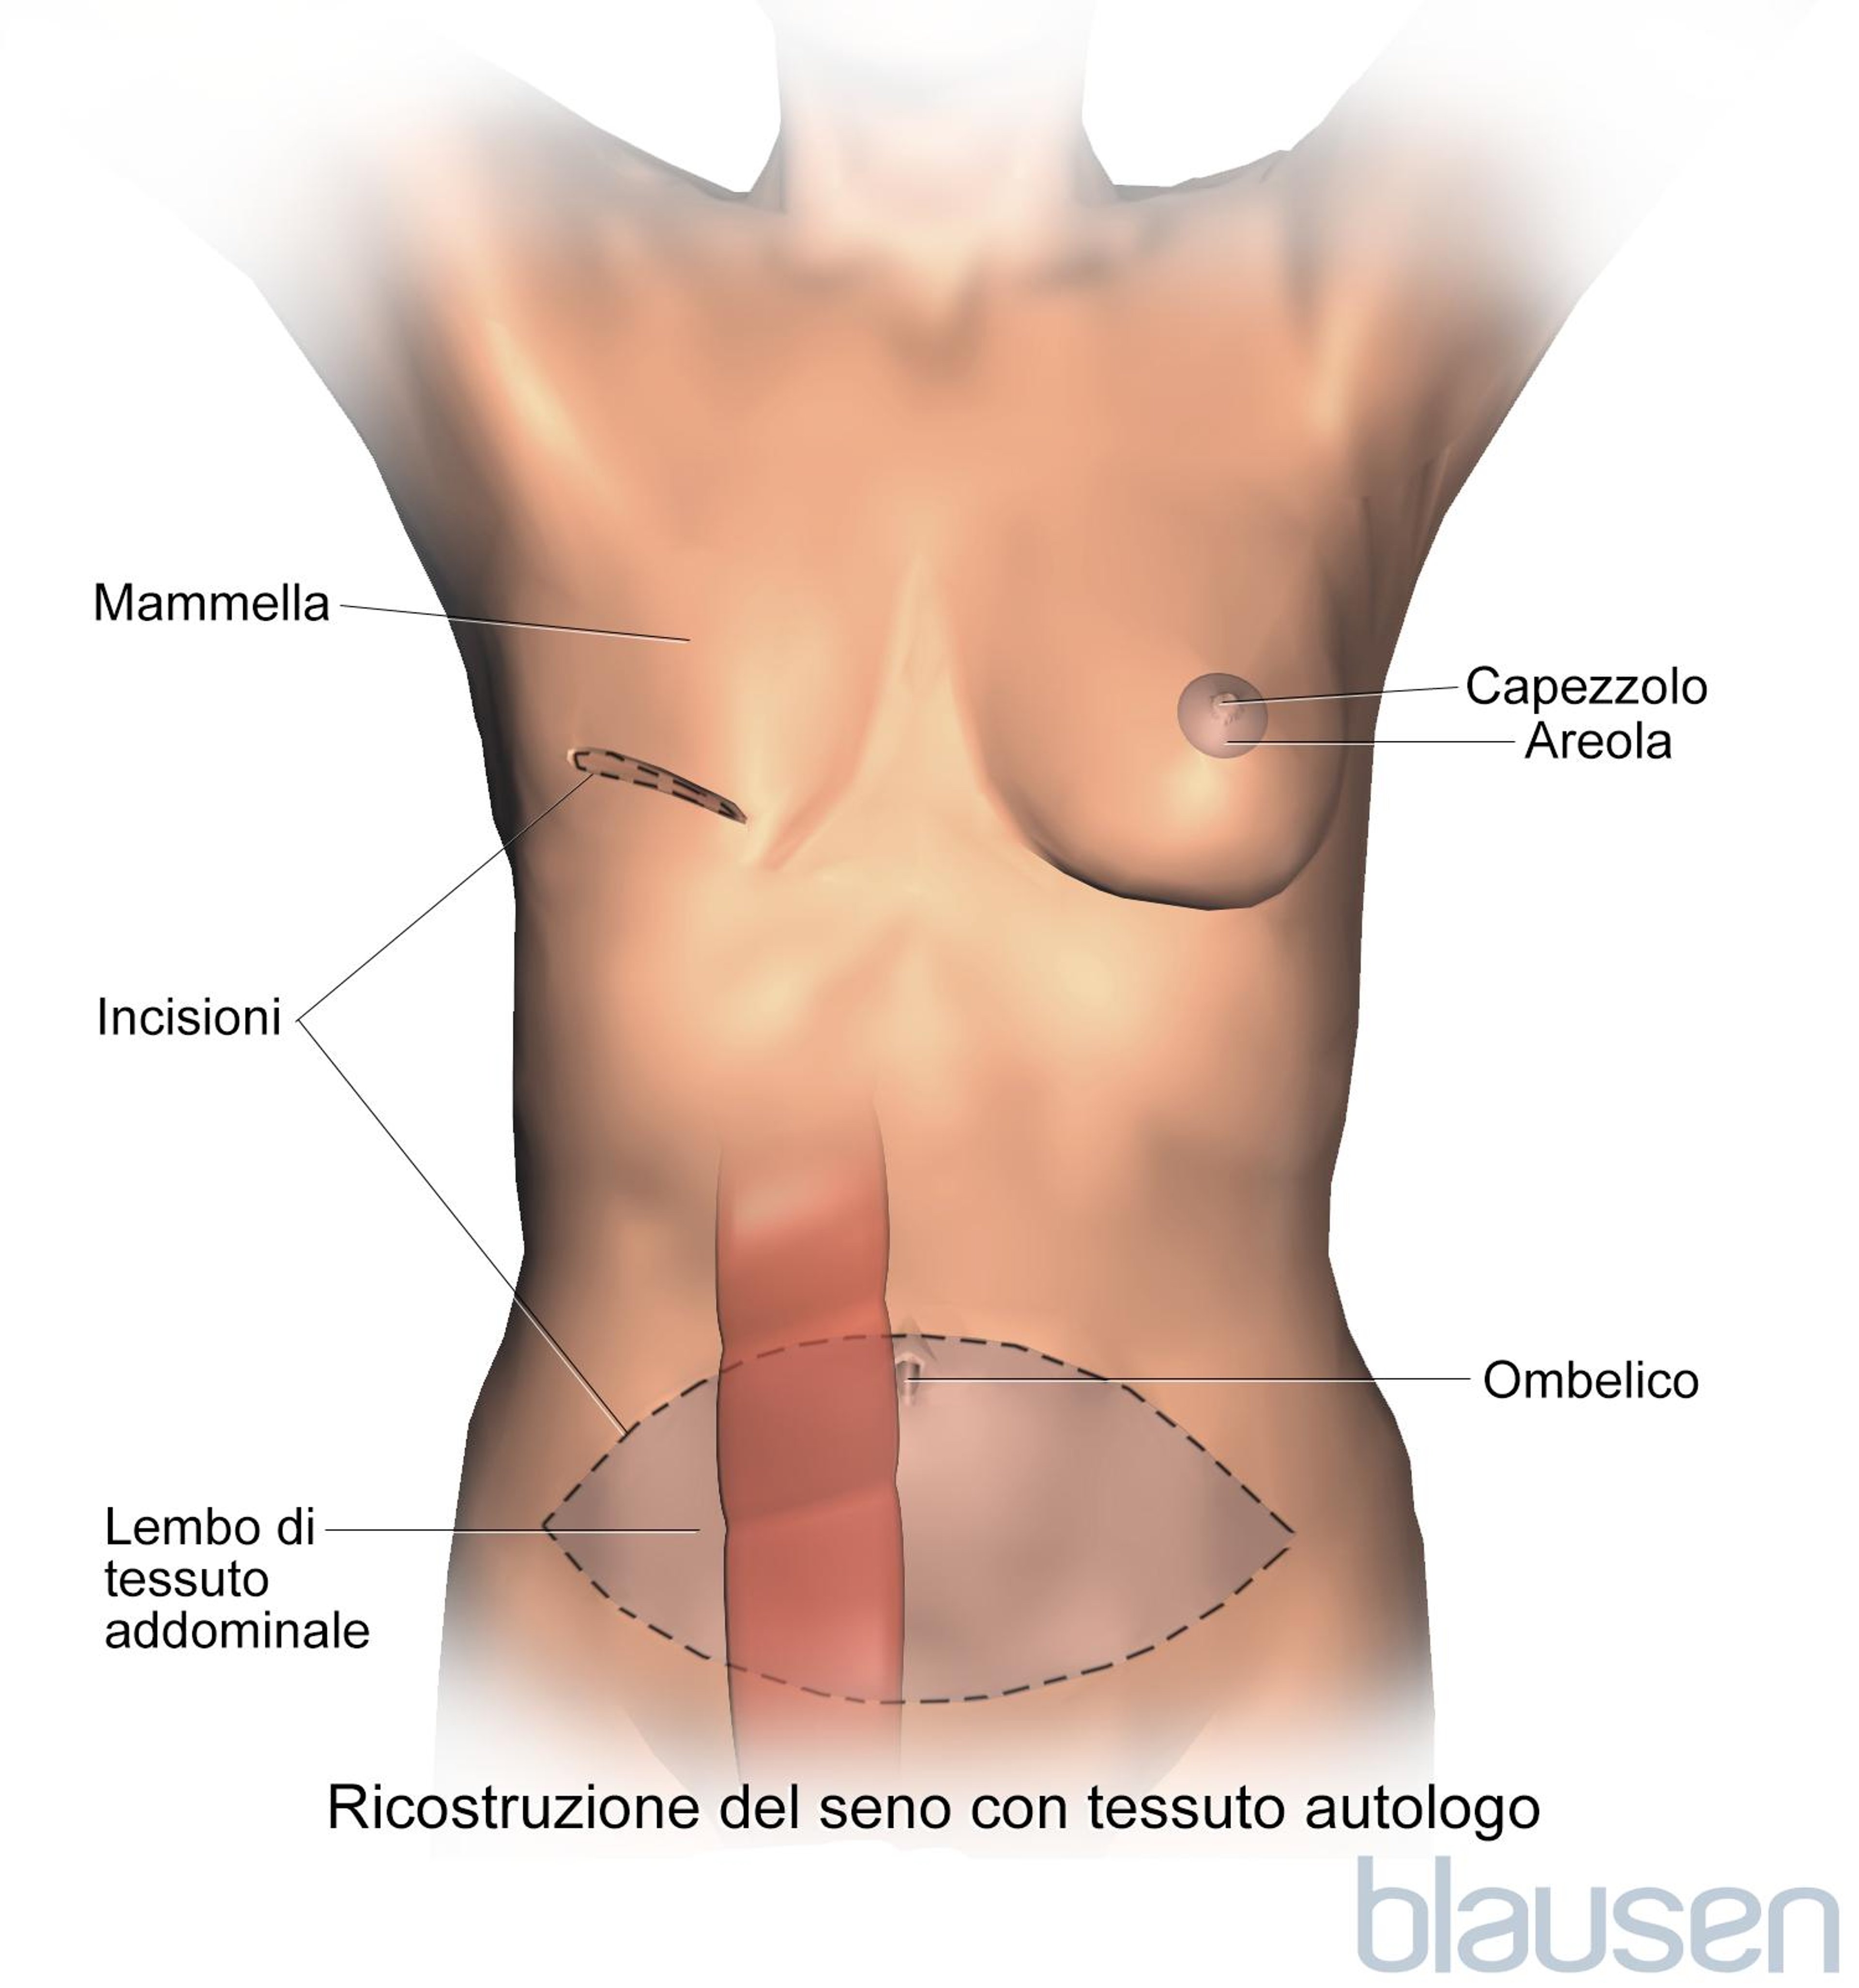 Ricostruzione mammaria mediante la procedura con lembo cutaneo (flap) del muscolo retto addominale trasverso (Transverse Rectus Abdominis Muscle, TRAM).